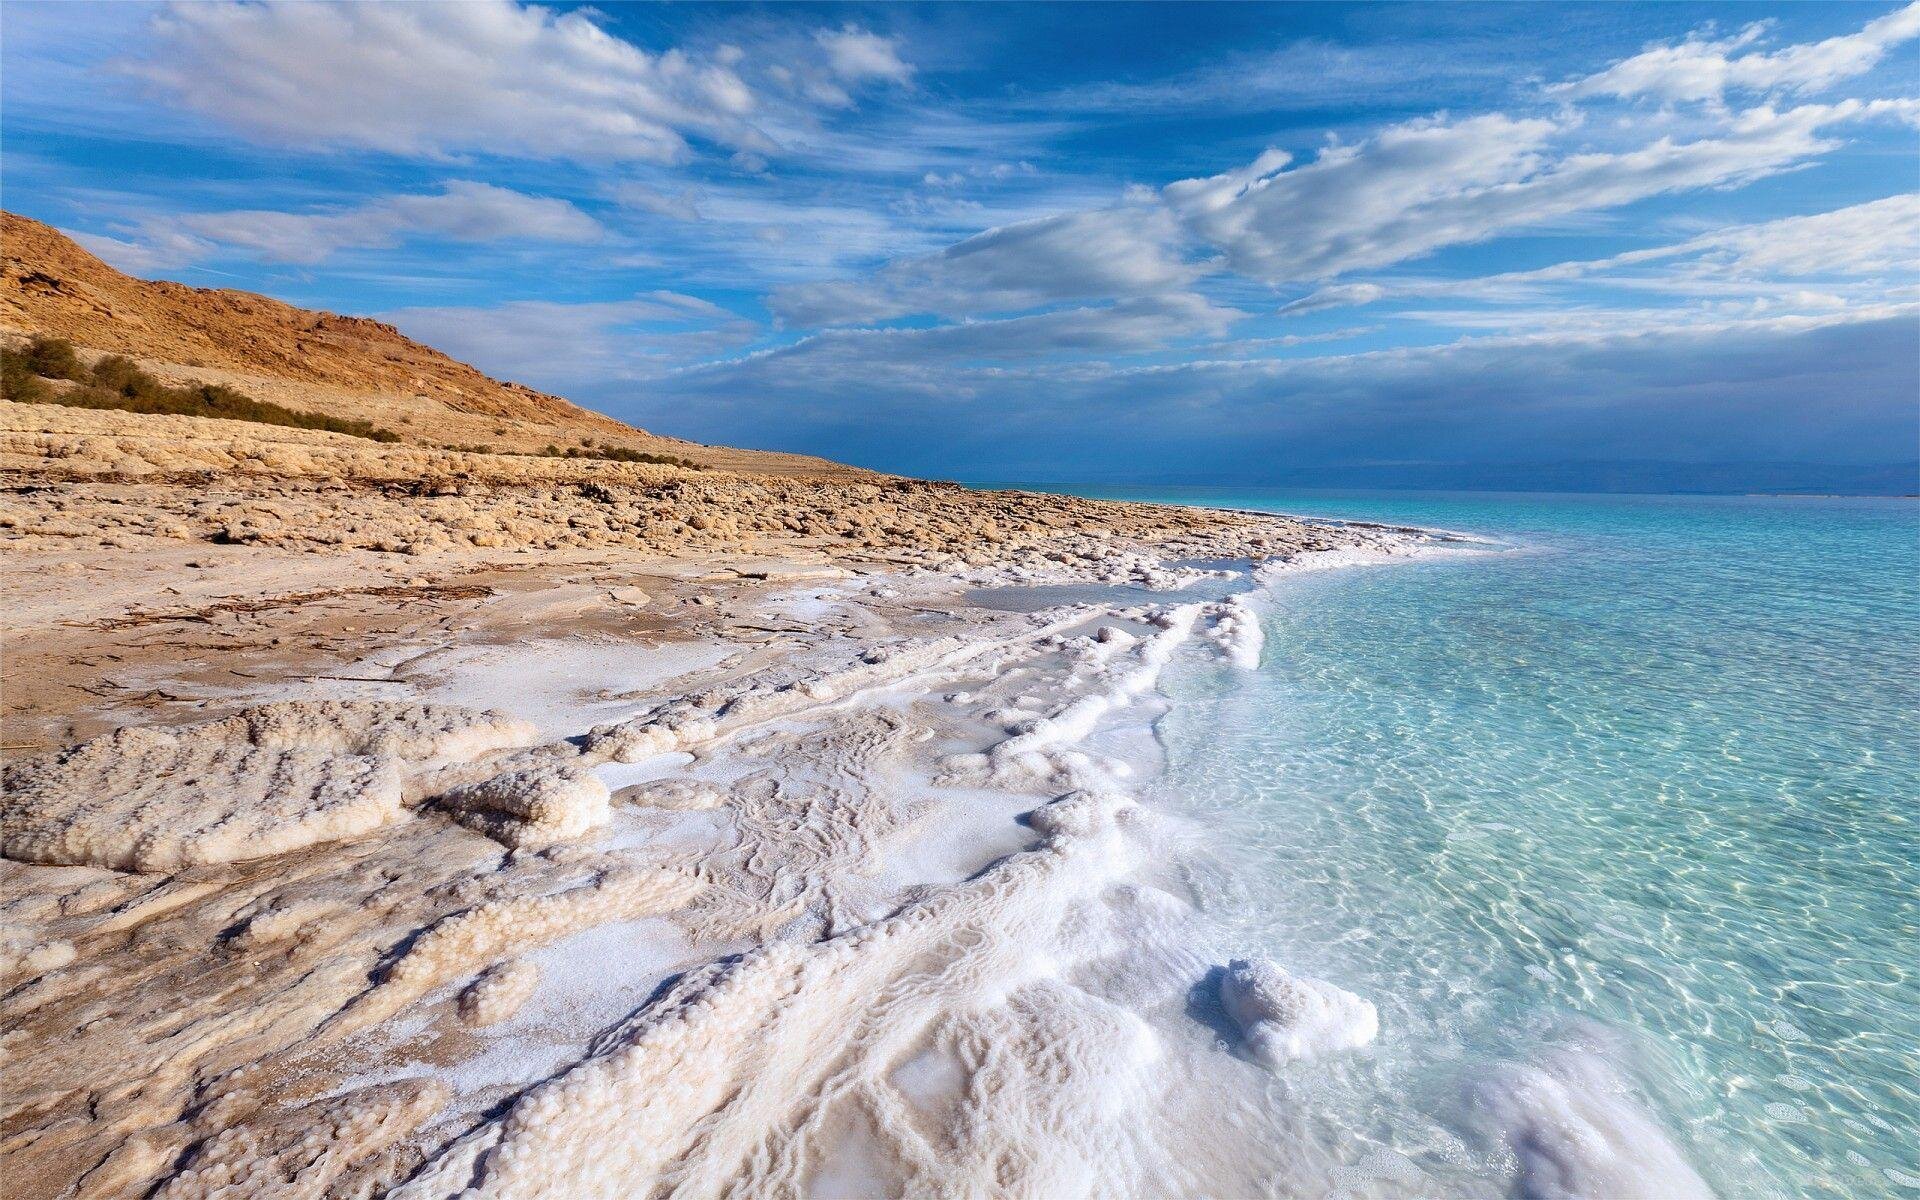 Пляжи мертвого моря в израиле